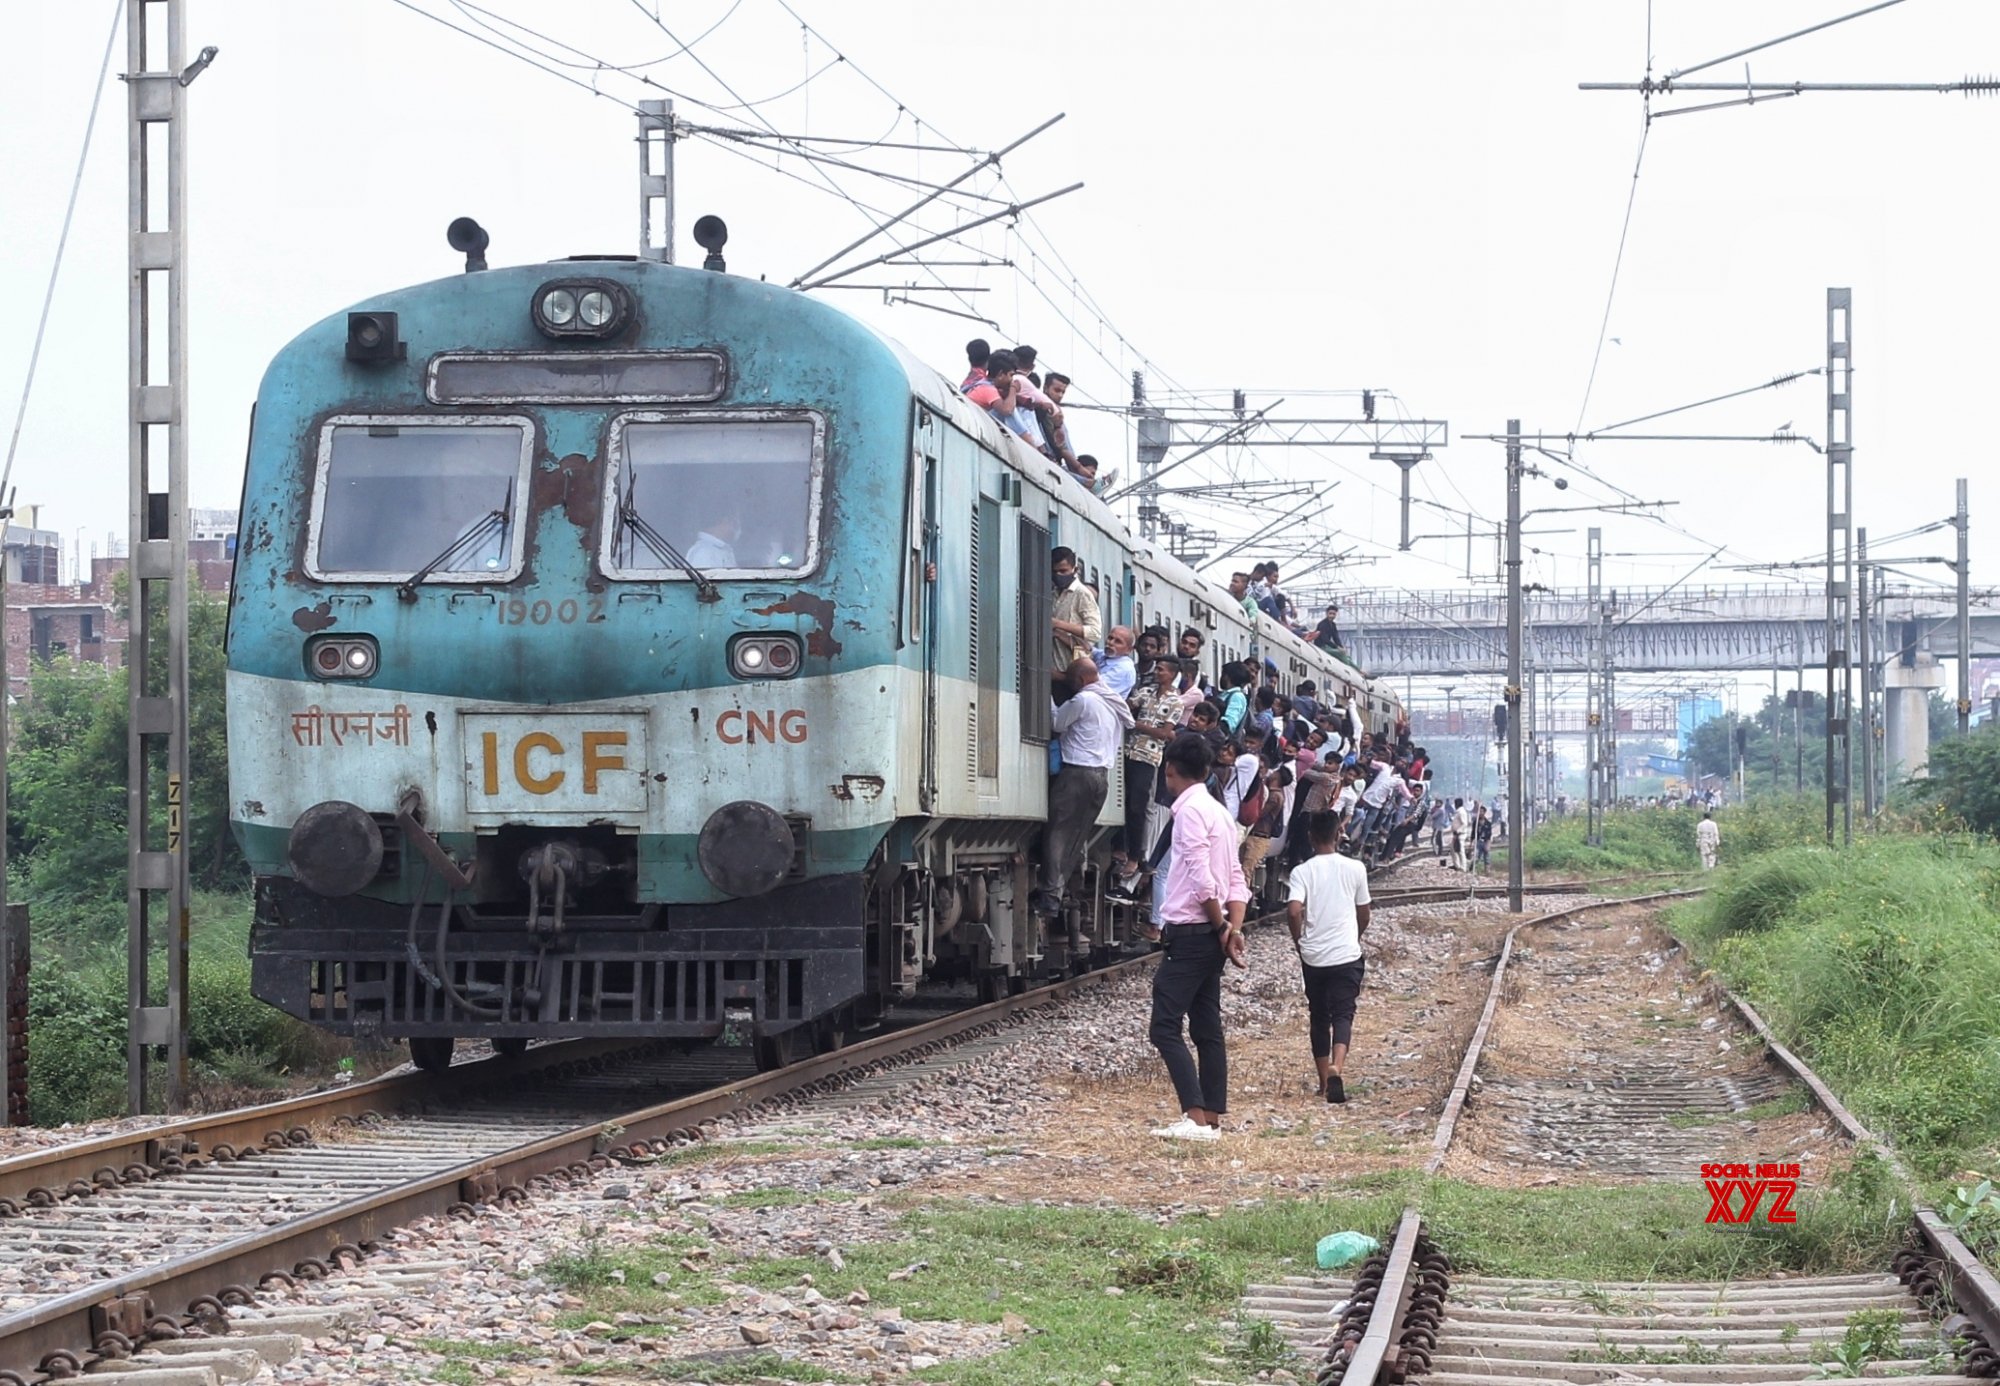 Γκαζιαμπάντ- Ινδία: Οι άνθρωποι προσκολλώνται σε ένα γεμάτο τρένο καθώς φεύγουν από το σταθμό Noli. Εικόνες. - Φωτογραφία 3